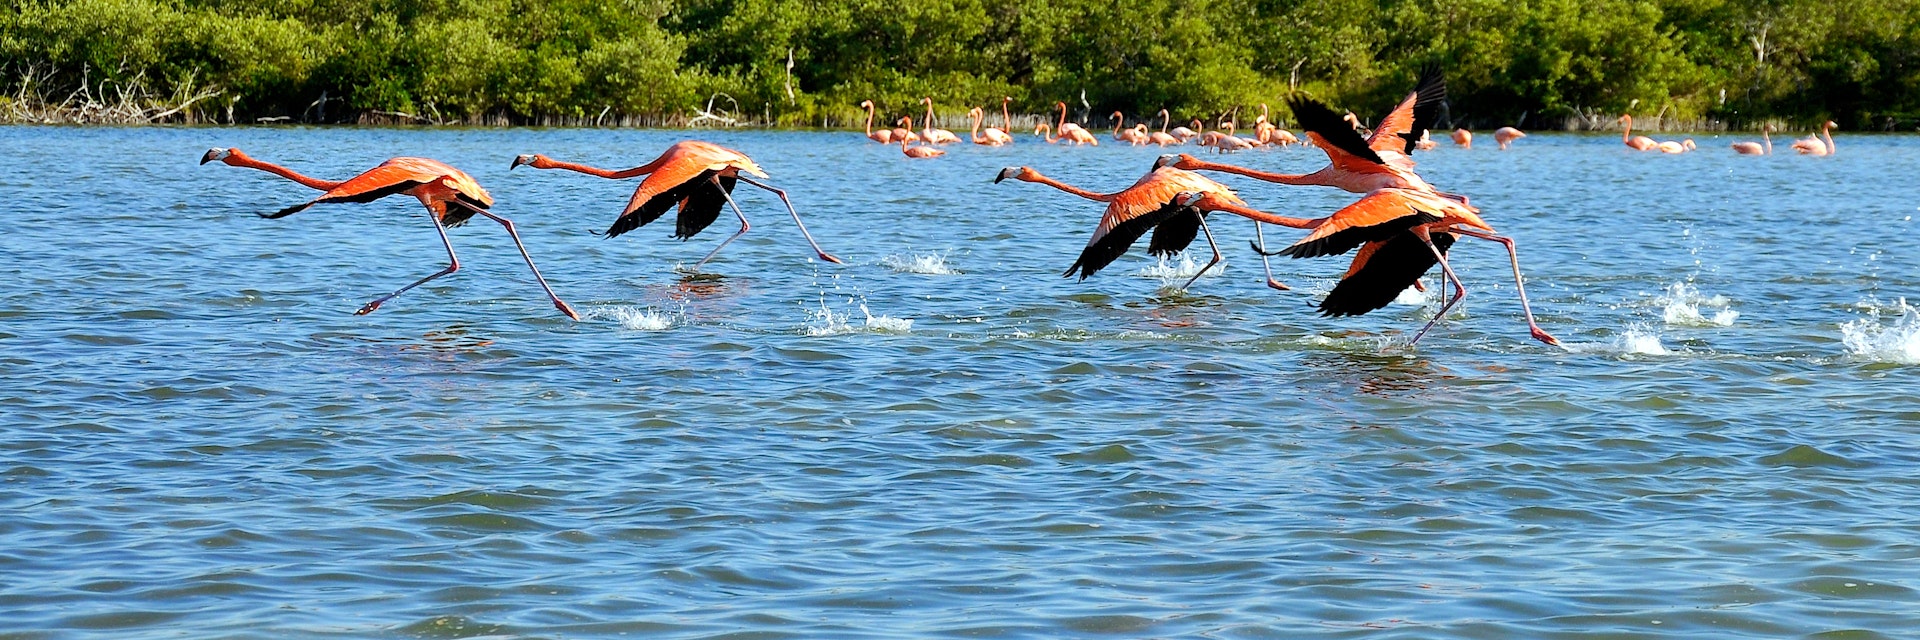 flamingos in paradise